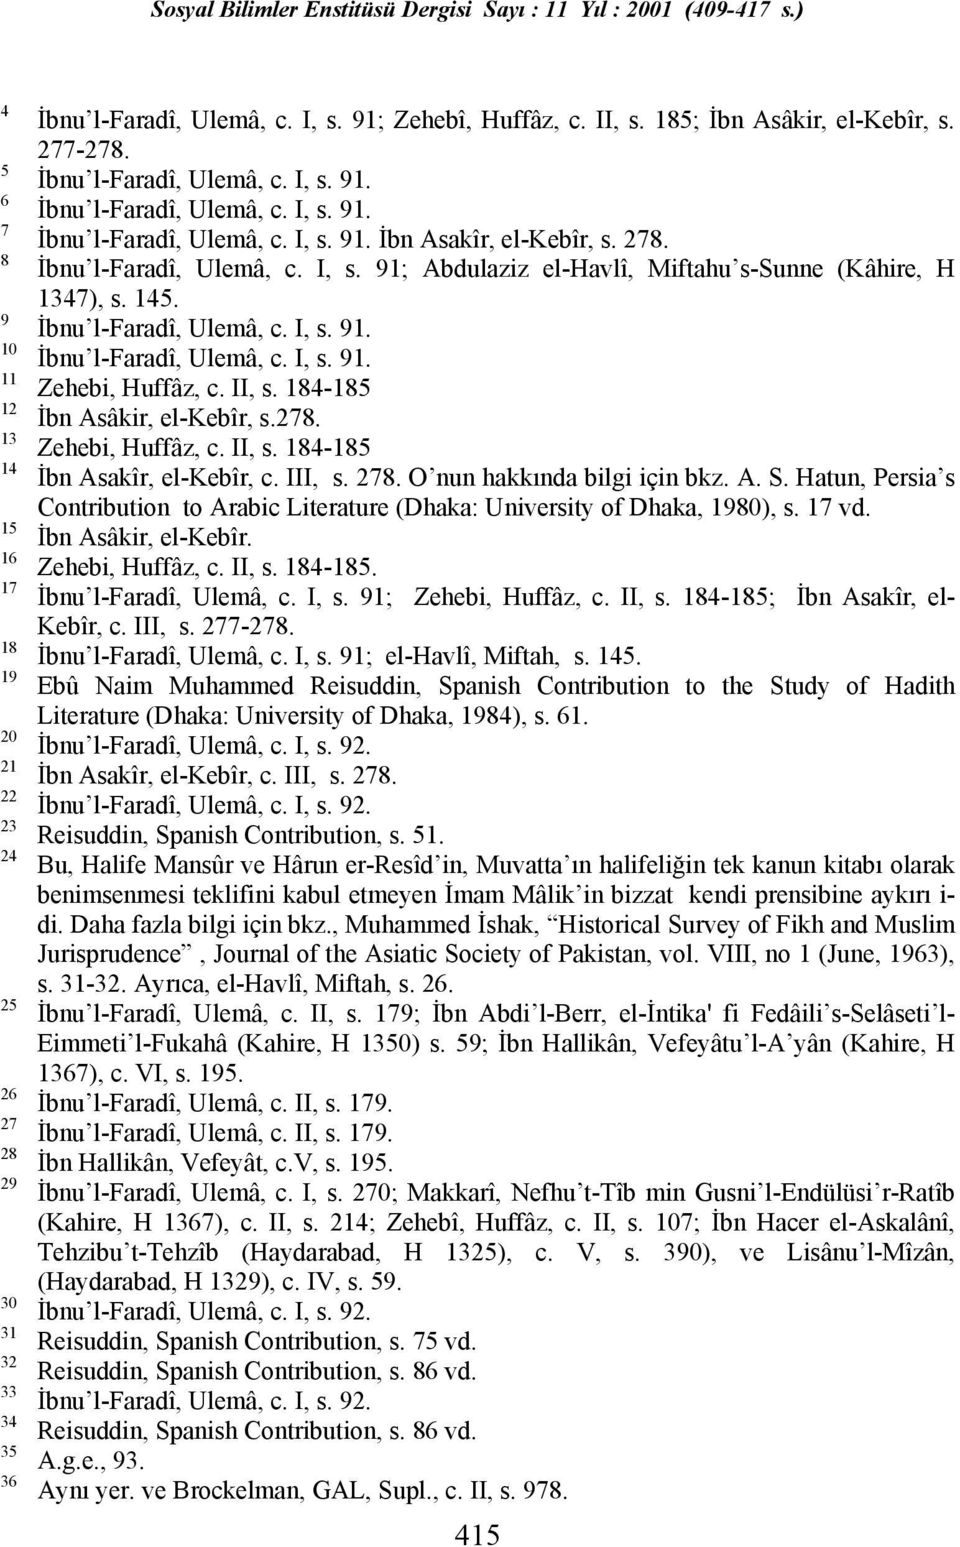 145. İbnu l-faradî, Ulemâ, c. I, s. 91. İbnu l-faradî, Ulemâ, c. I, s. 91. Zehebi, Huffâz, c. II, s. 184-185 İbn Asâkir, el-kebîr, s.278. Zehebi, Huffâz, c. II, s. 184-185 İbn Asakîr, el-kebîr, c.